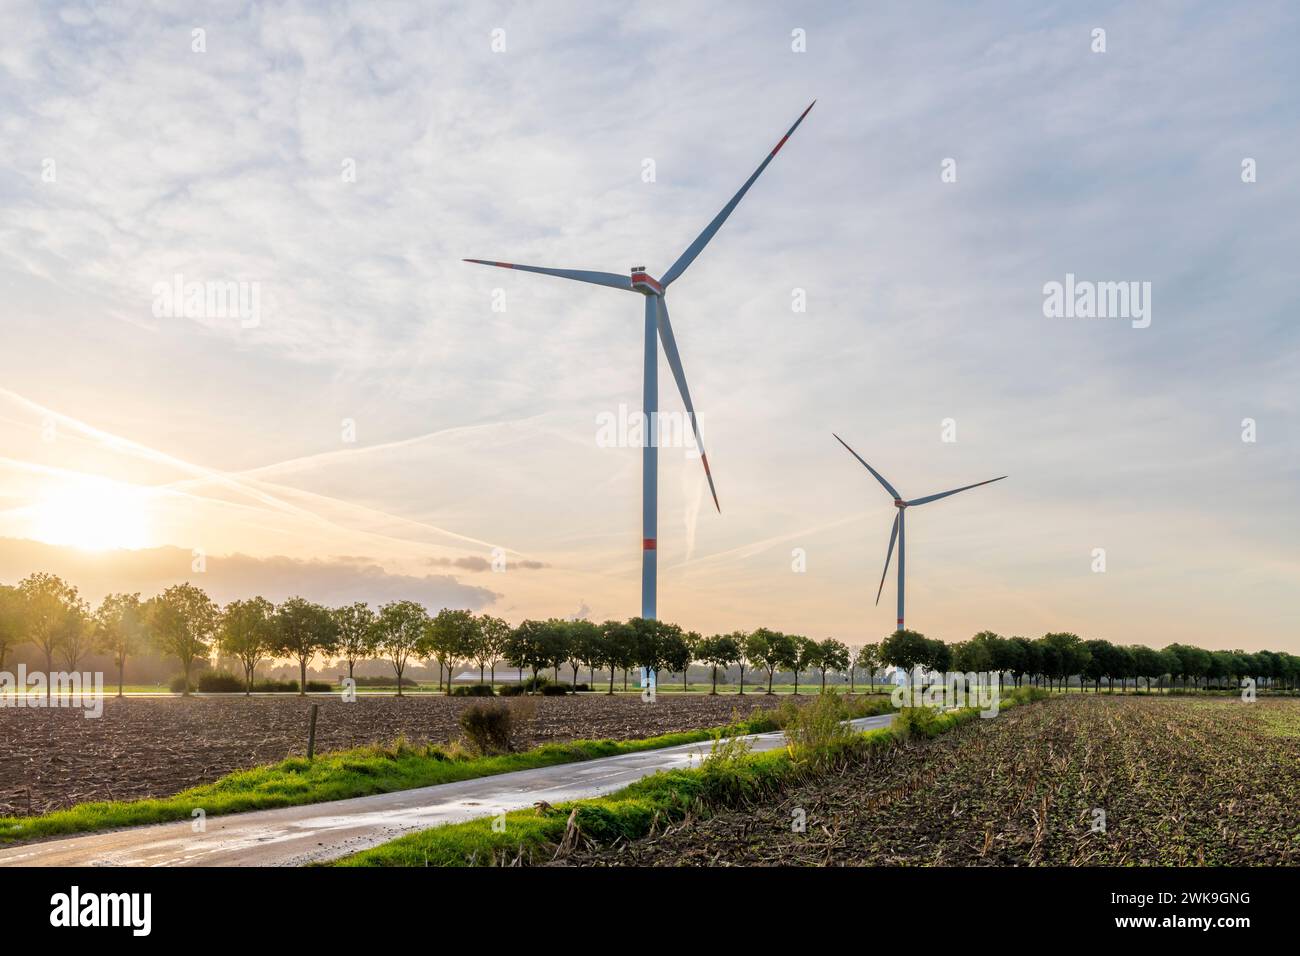 Turbine eoliche e alberi, così come una strada che conduce all'orizzonte illuminata dal sole tramonta, si combinano per creare un'immagine energica. Foto Stock